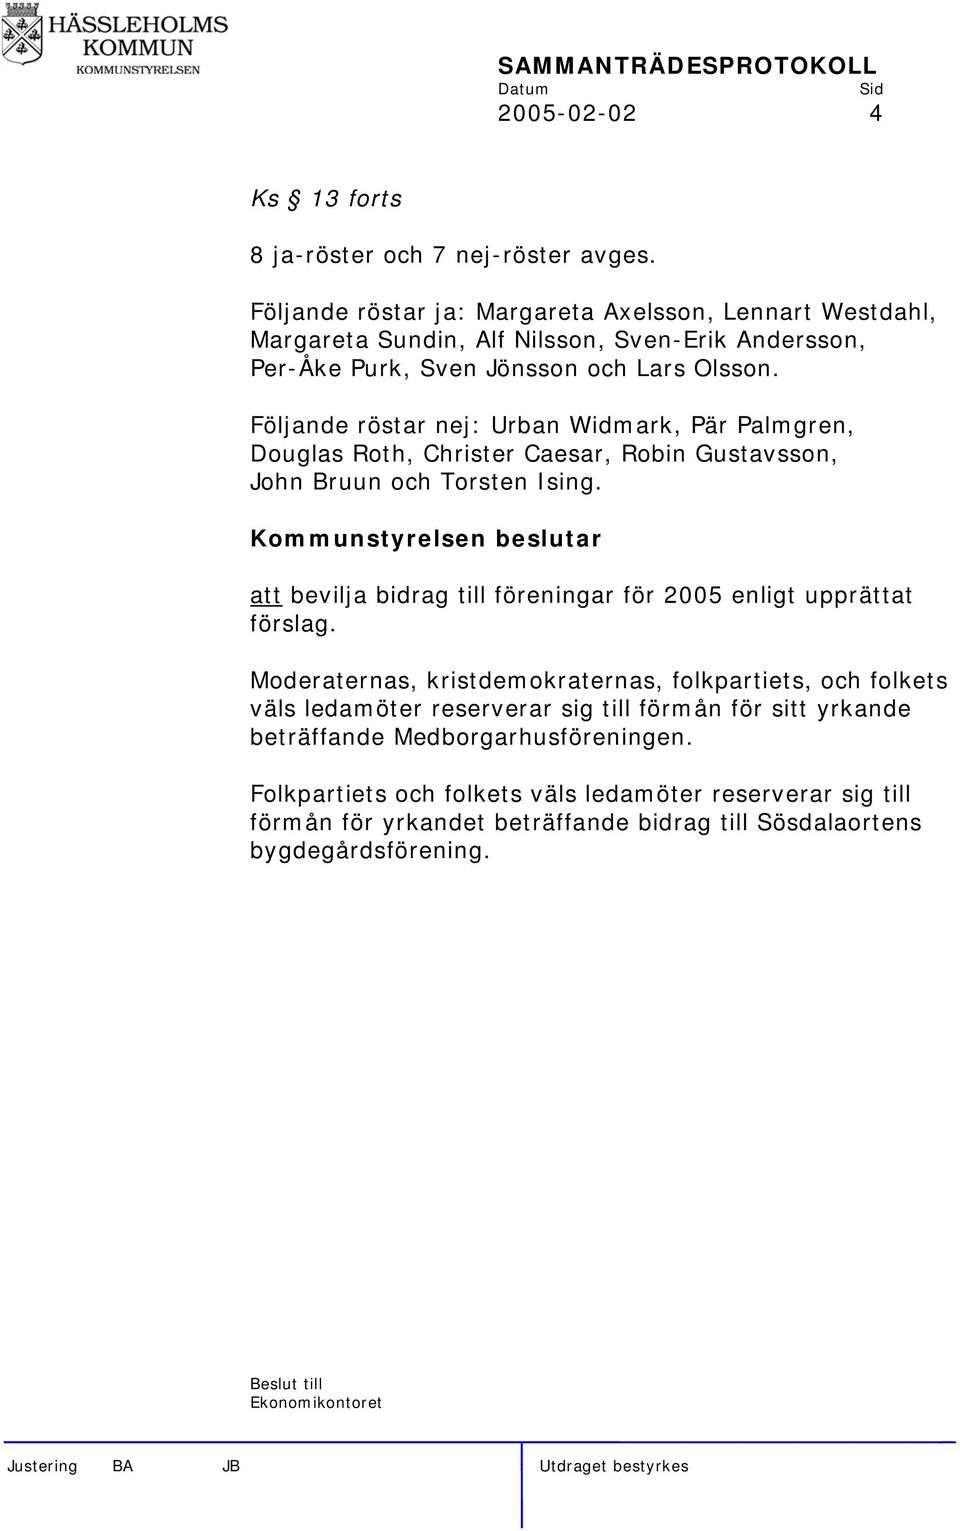 Följande röstar nej: Urban Widmark, Pär Palmgren, Douglas Roth, Christer Caesar, Robin Gustavsson, John Bruun och Torsten Ising.